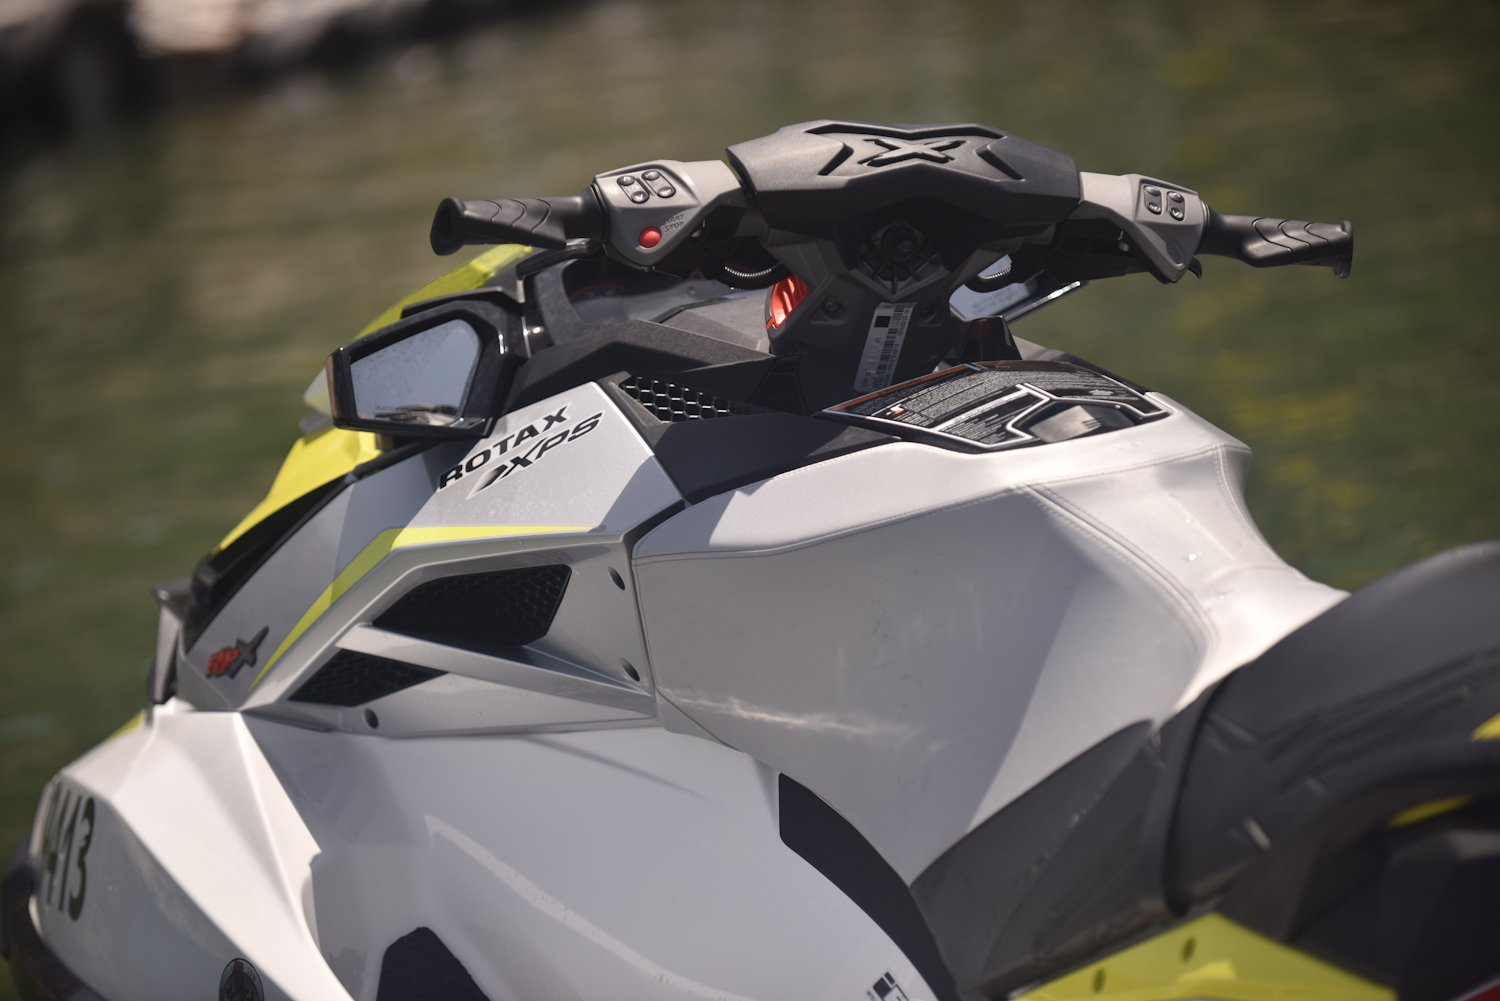 אופנועי הים החדשים של סידו - השקה מקומית (וידאו)